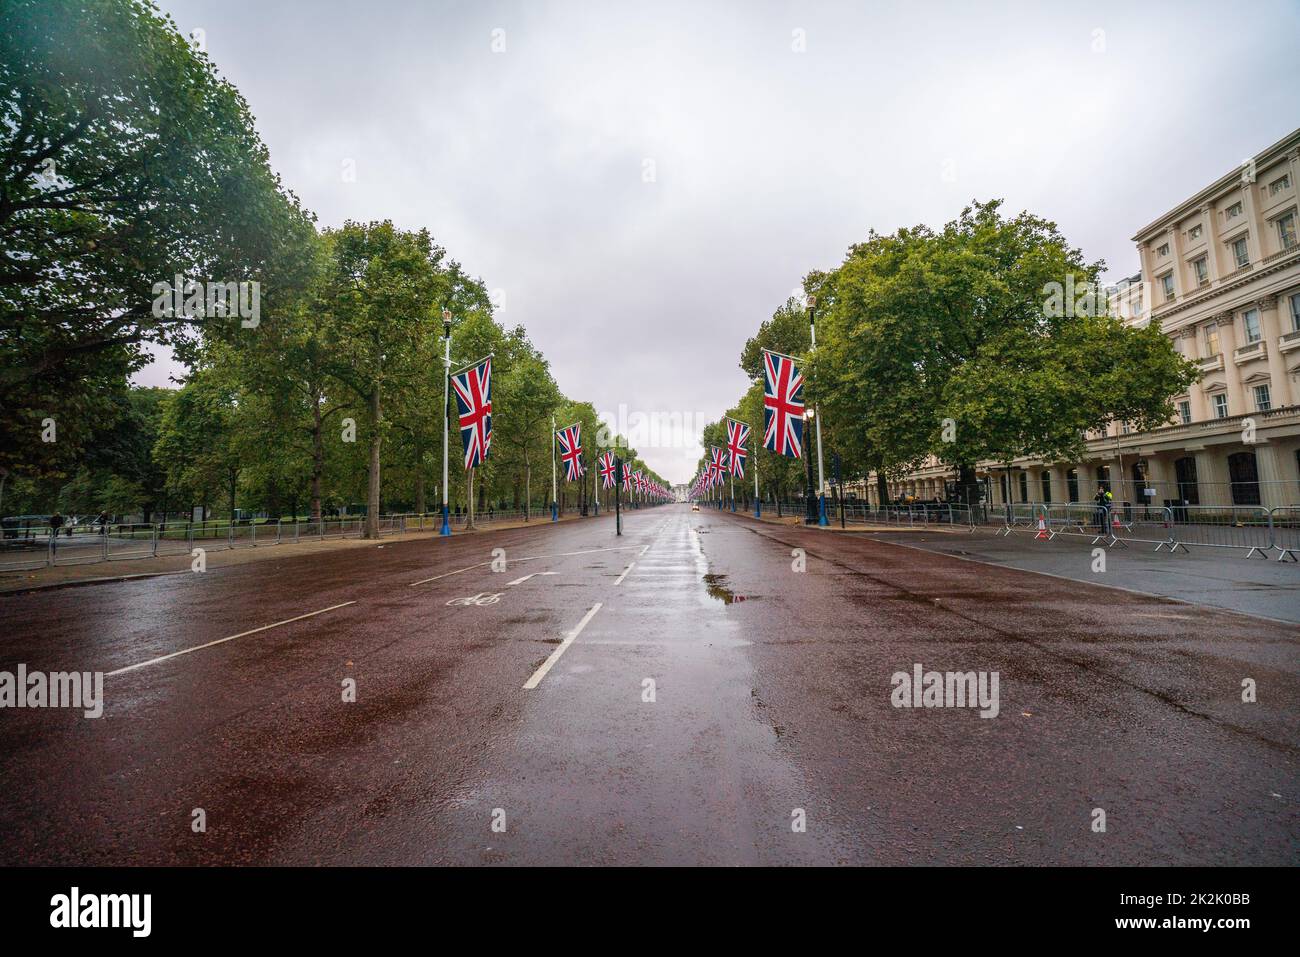 Londres, Reino Unido. 23 de septiembre de 2022. Las banderas de Union Jack se muestran a lo largo del centro comercial a primera hora de la mañana en un día nublado que está temporalmente cerrado por tráfico después del funeral estatal de la Reina Elizabeth II como la previsión de lluvia en Londres durante todo el día Crédito: amer ghazzal/Alamy Live News. Foto de stock